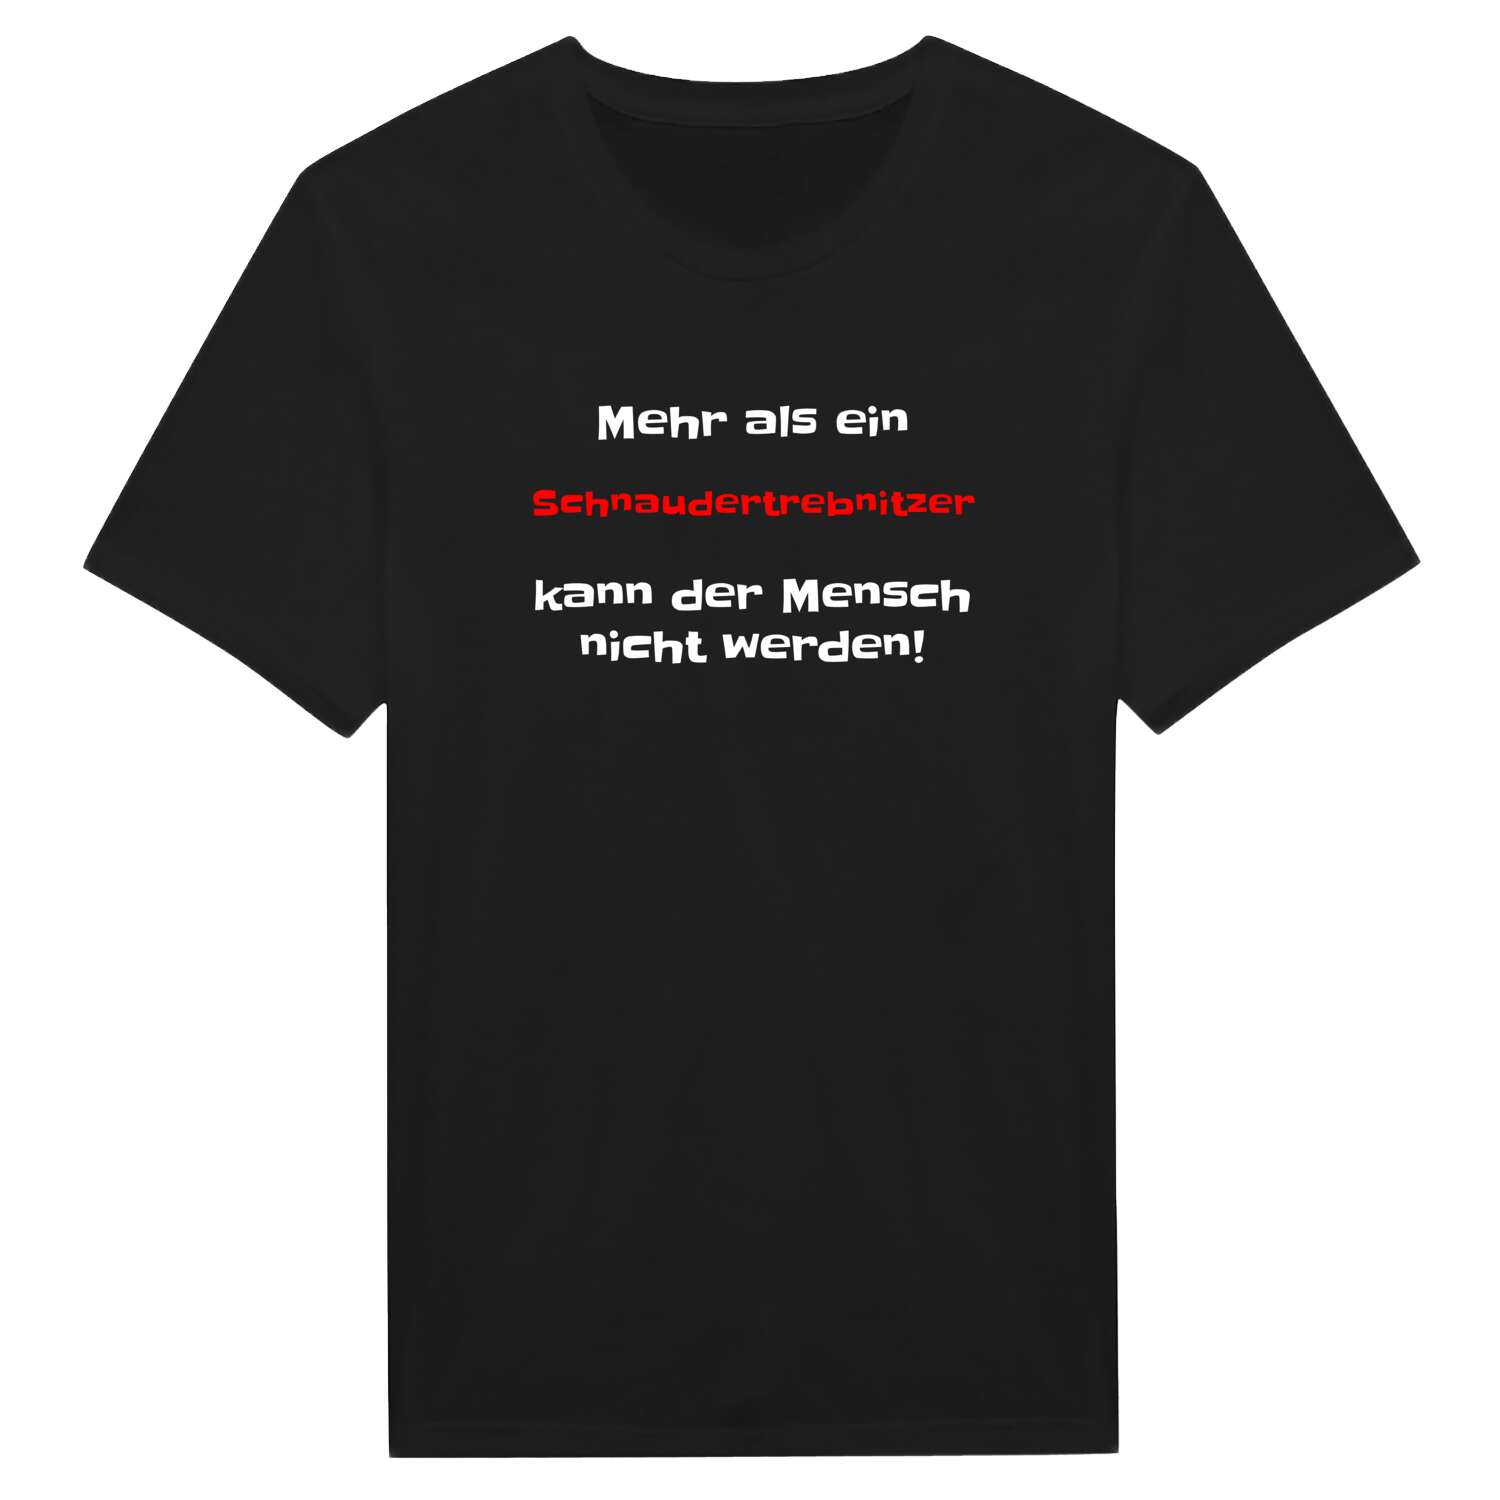 Schnaudertrebnitz T-Shirt »Mehr als ein«